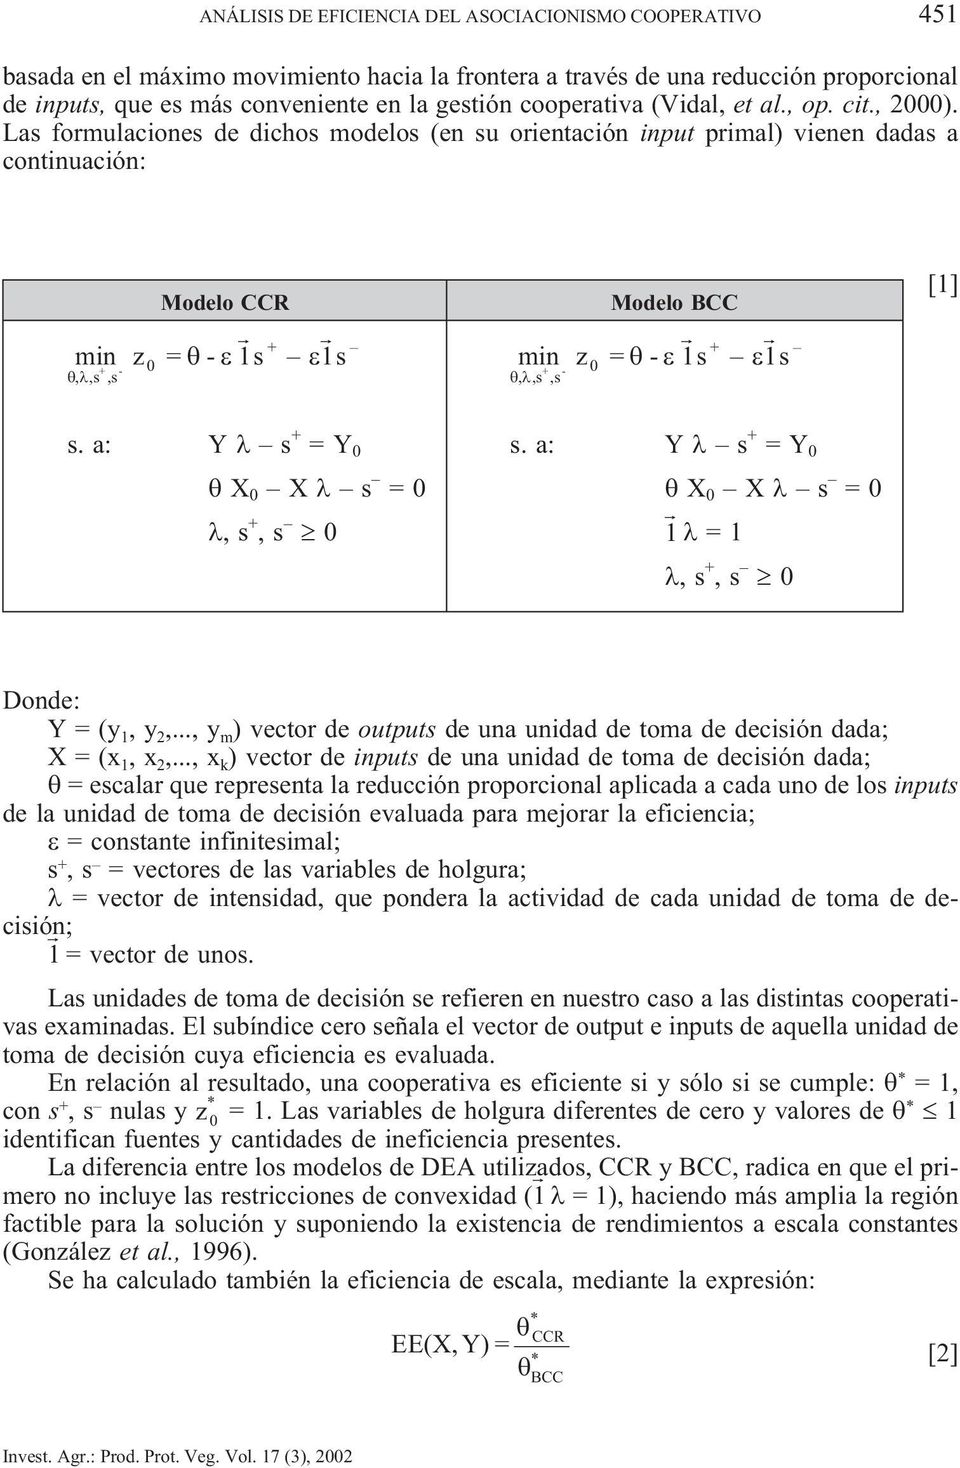 Las formulacones de dchos modelos (en su orentacón nput prmal) venen dadas a contnuacón: Modelo CCR Modelo BCC + mn z = - 1s 1s mn z = - 1s 1s + -,,s,s 0 + -,,s,s 0 + [1] s. a: Y s + =Y 0 s.